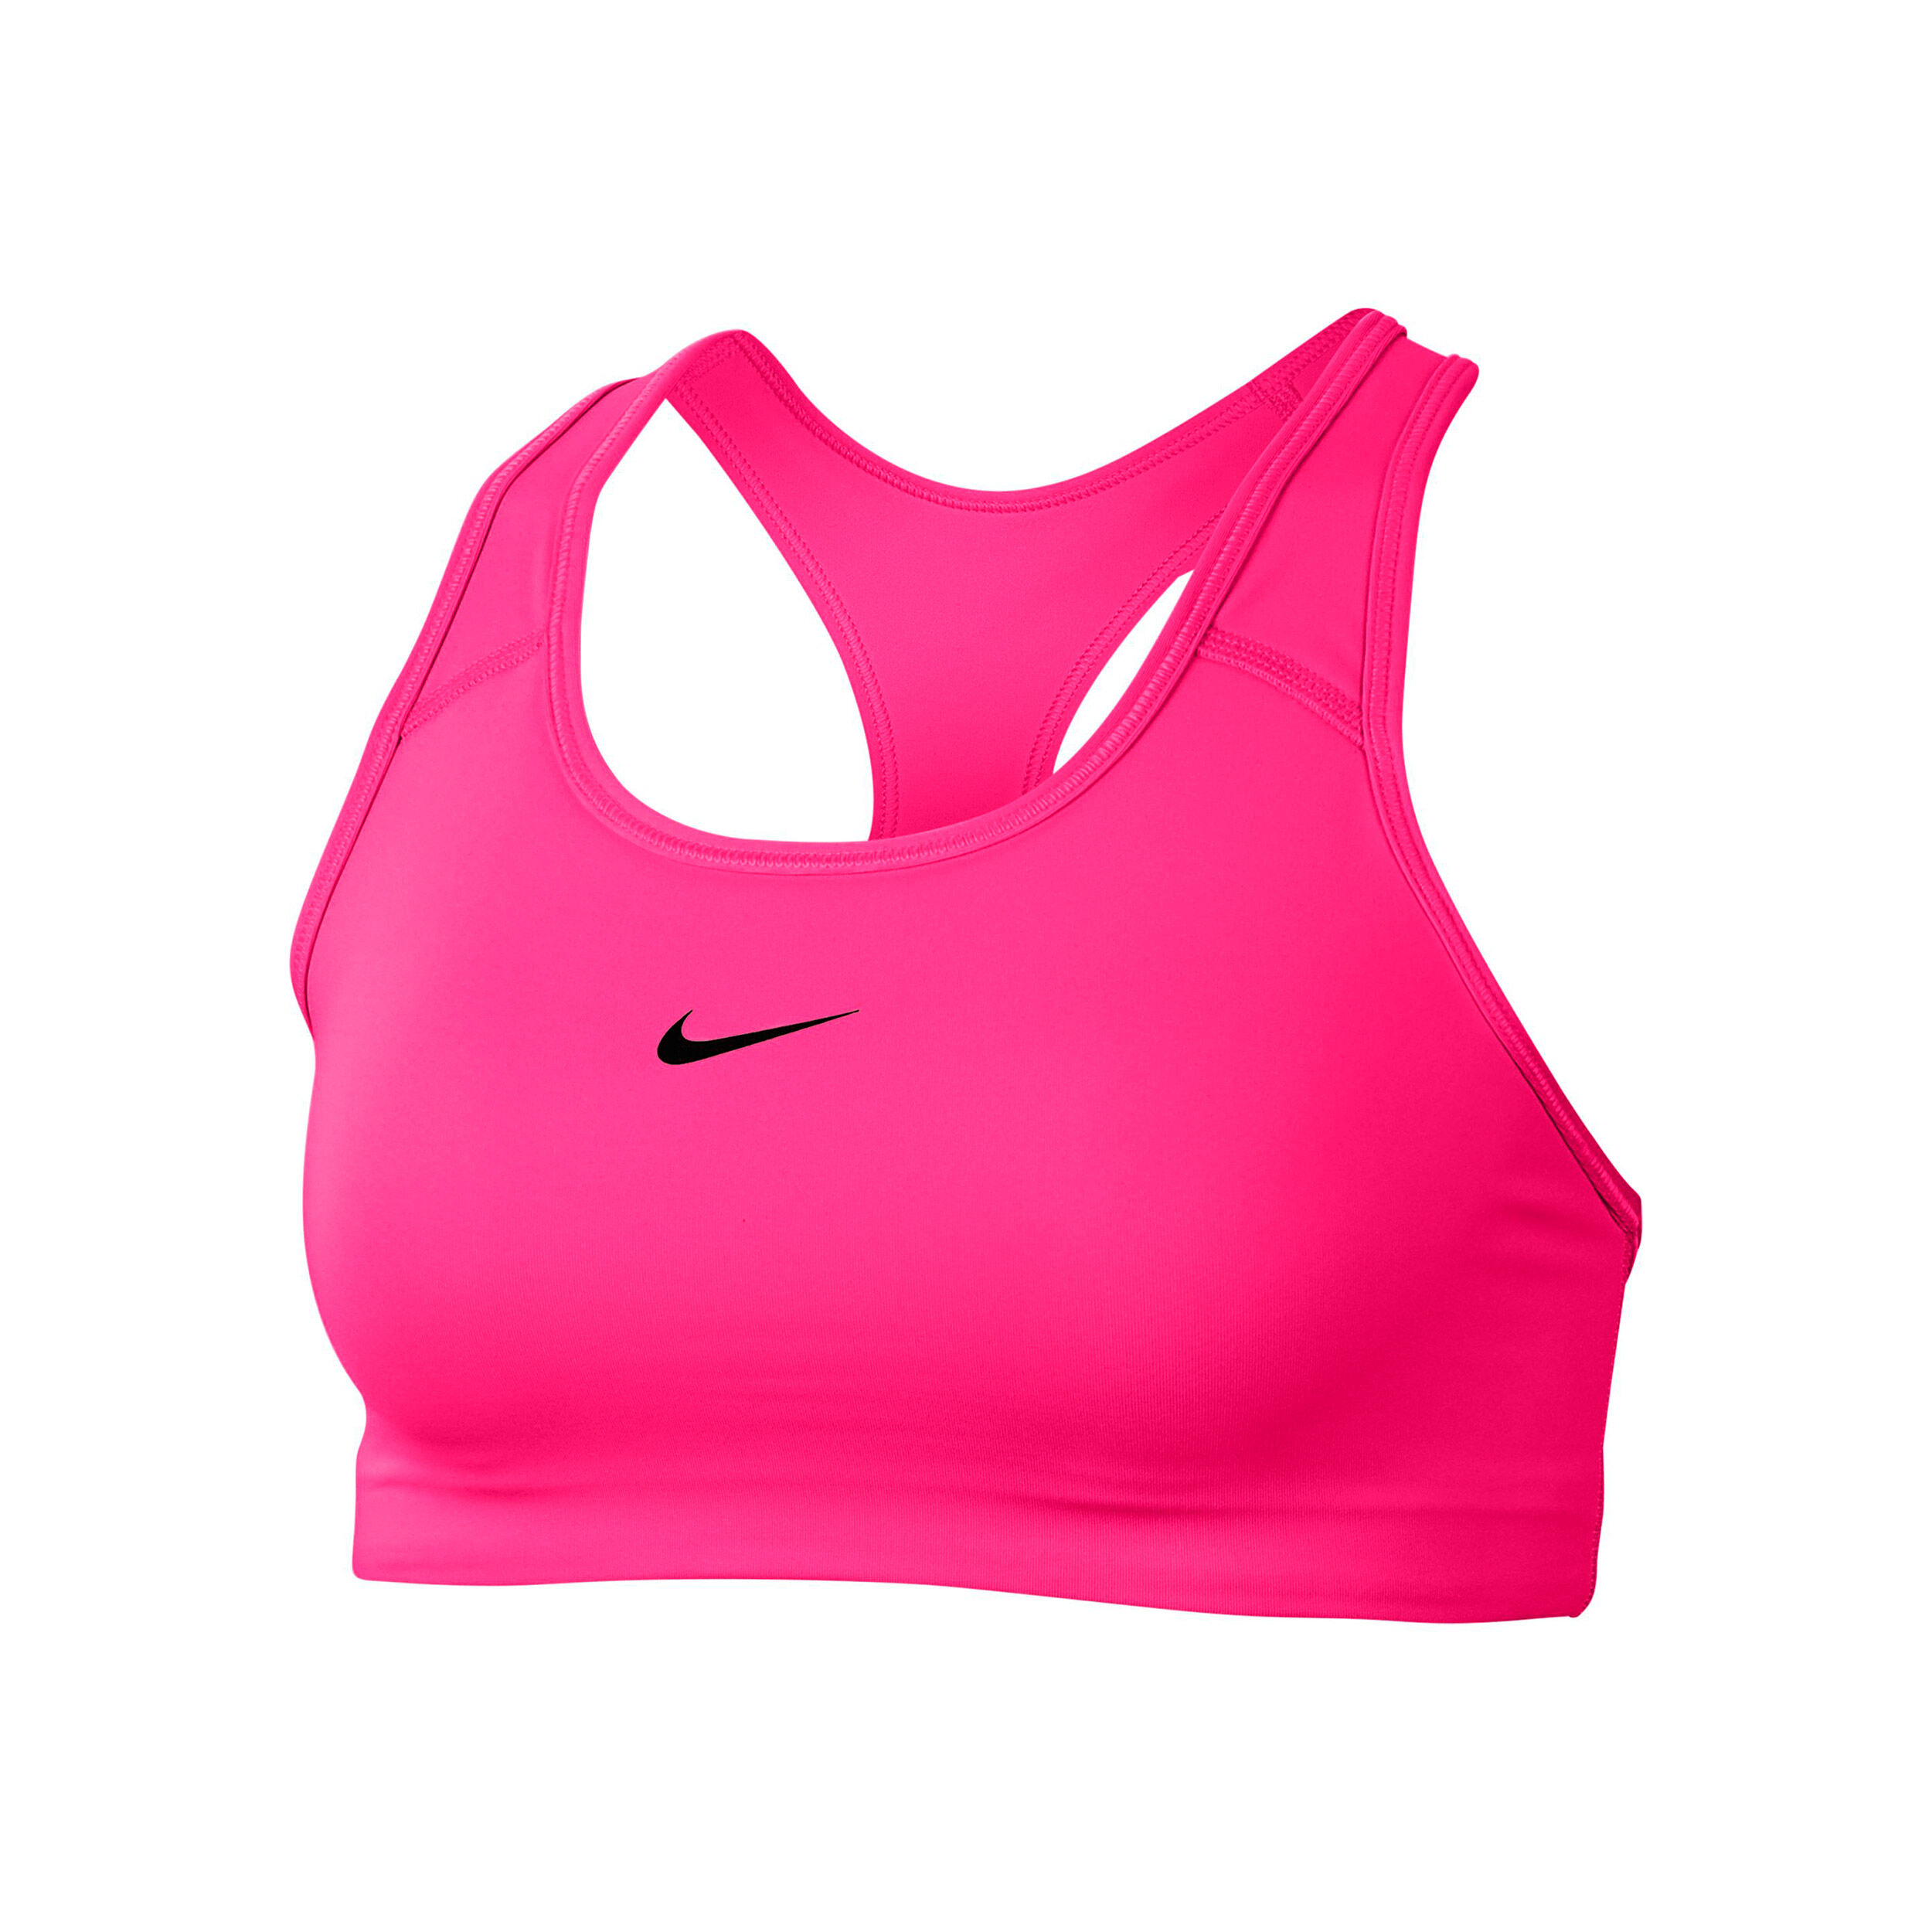 buy Nike Sports Bras Women - Neon Pink 